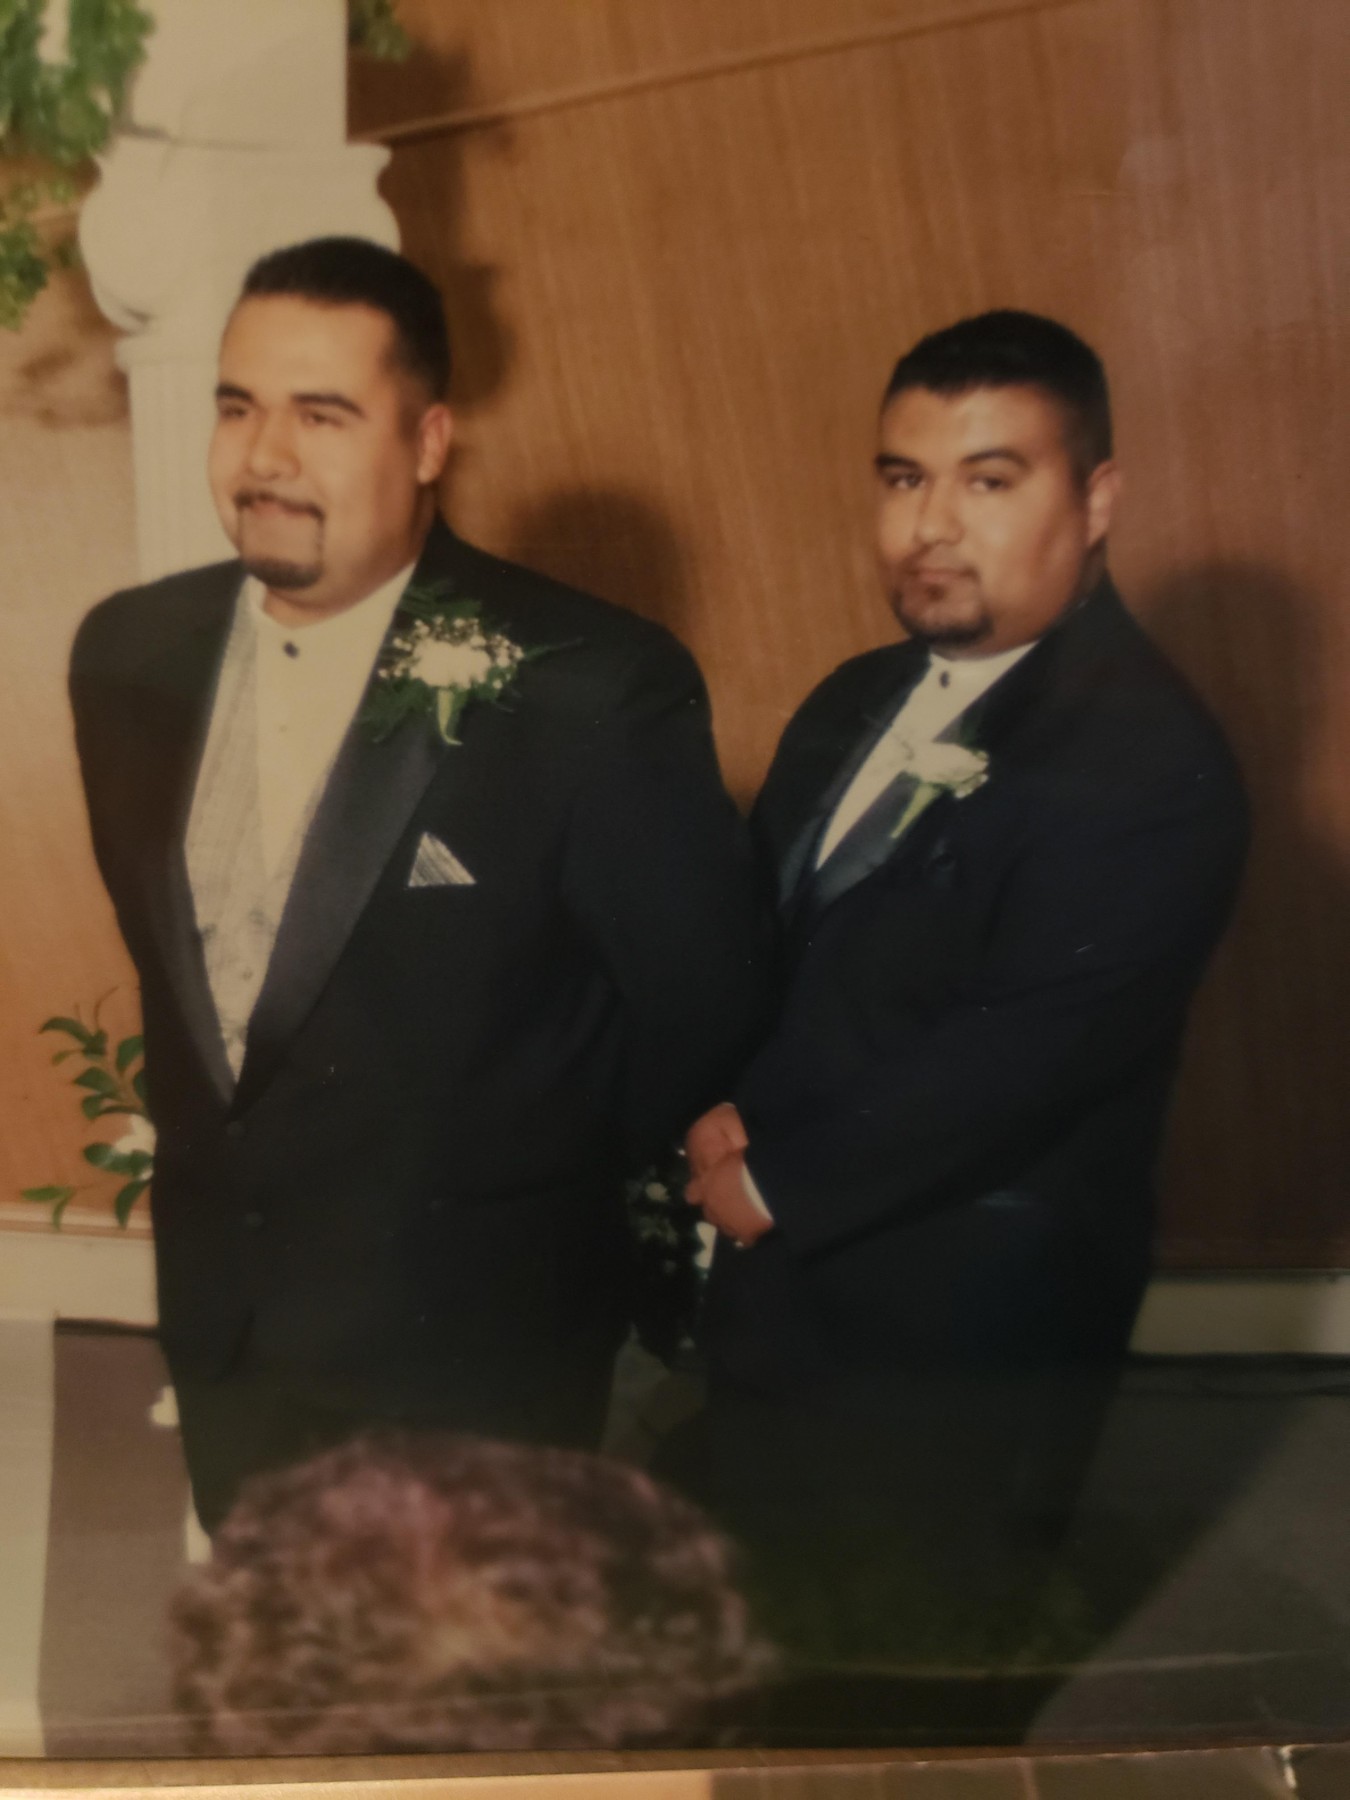 Obituary of Guadalupe Lozano  Villa Sr. - 06/01/2021 - From the Family